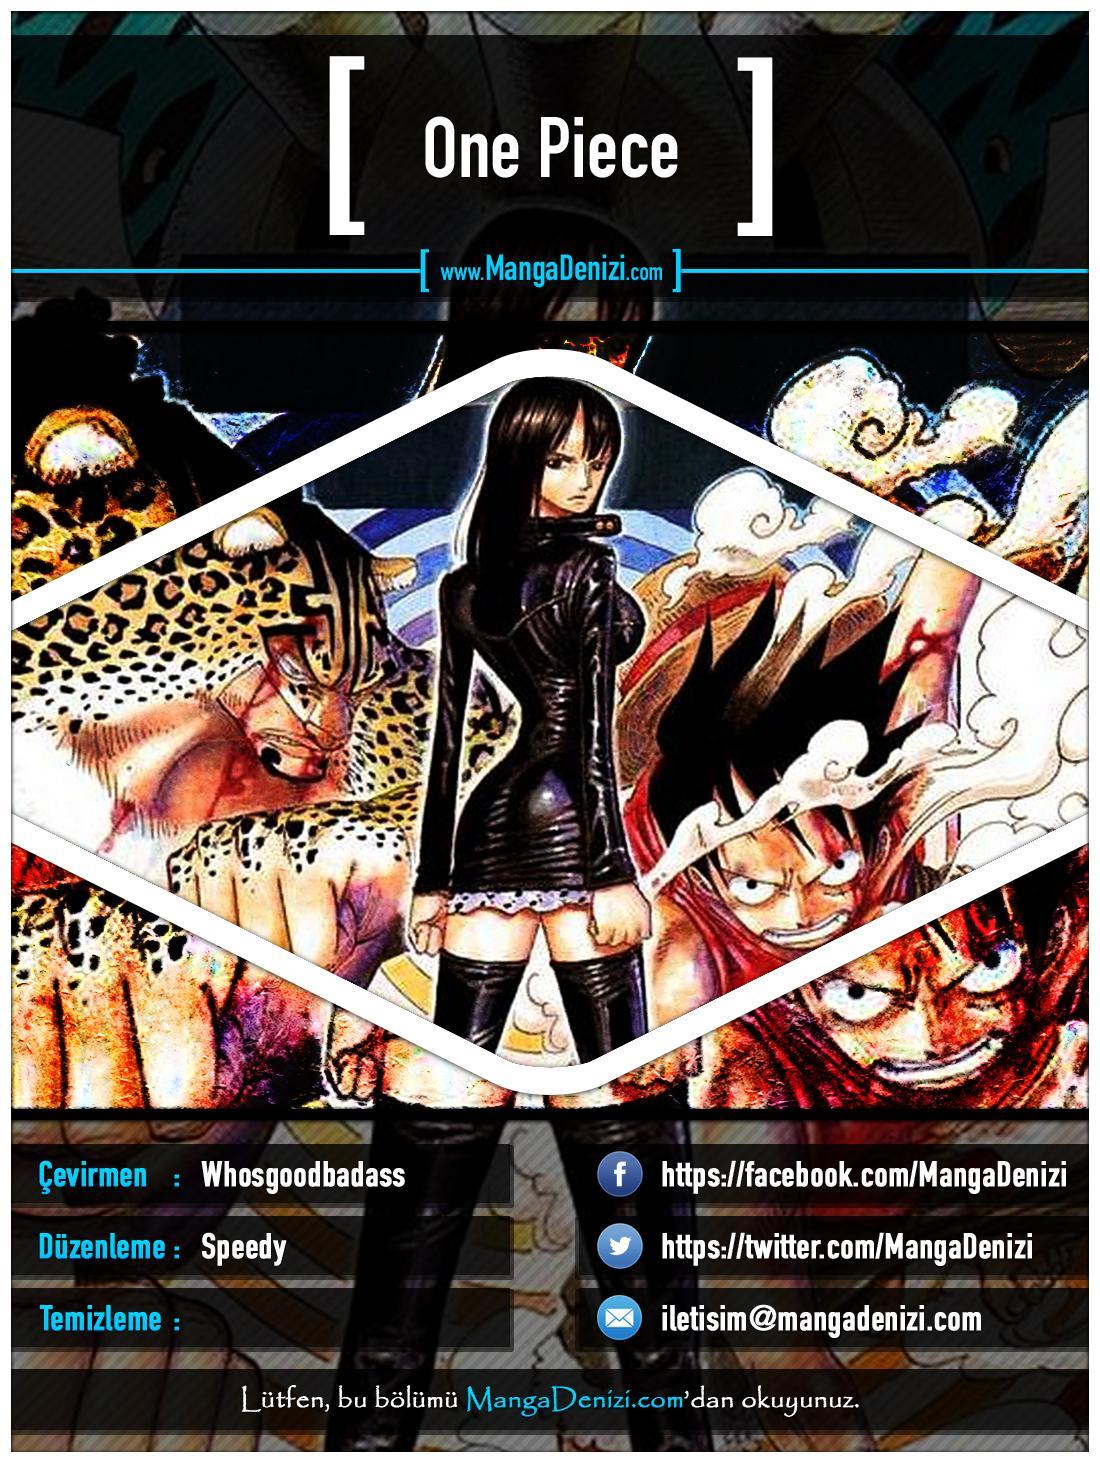 One Piece [Renkli] mangasının 0372 bölümünün 1. sayfasını okuyorsunuz.